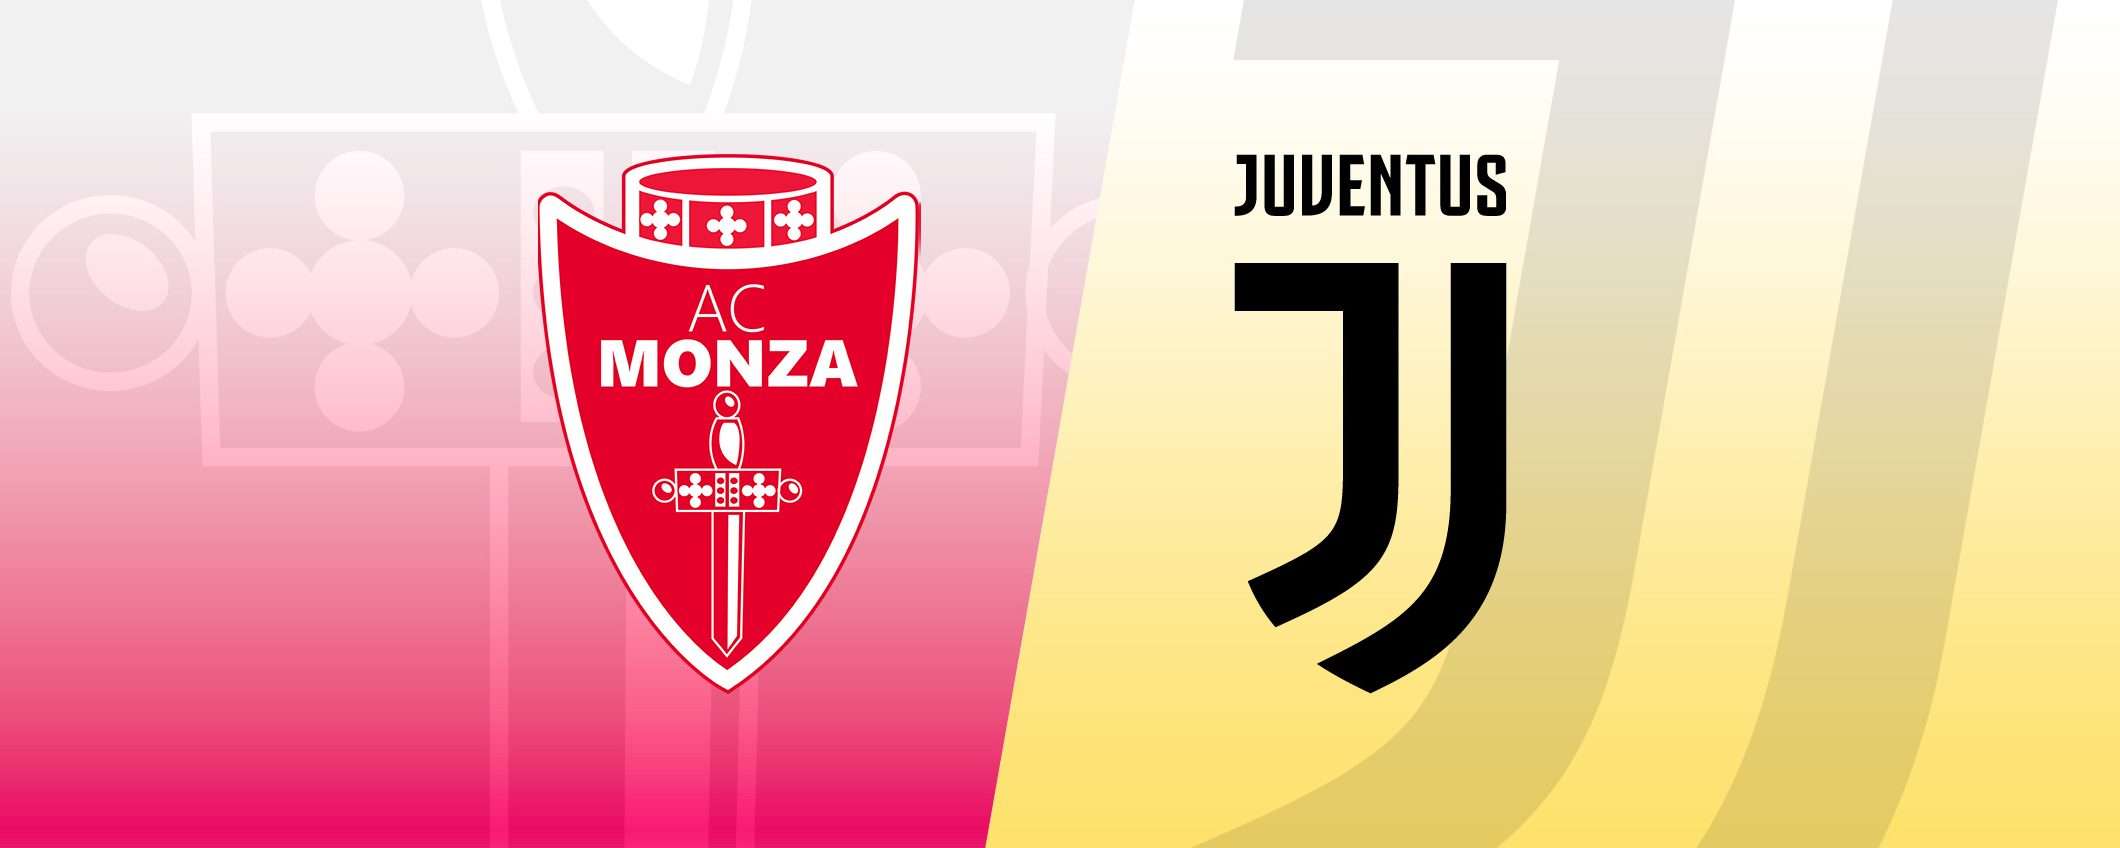 Monza-Juventus: formazioni e dove vederla in streaming